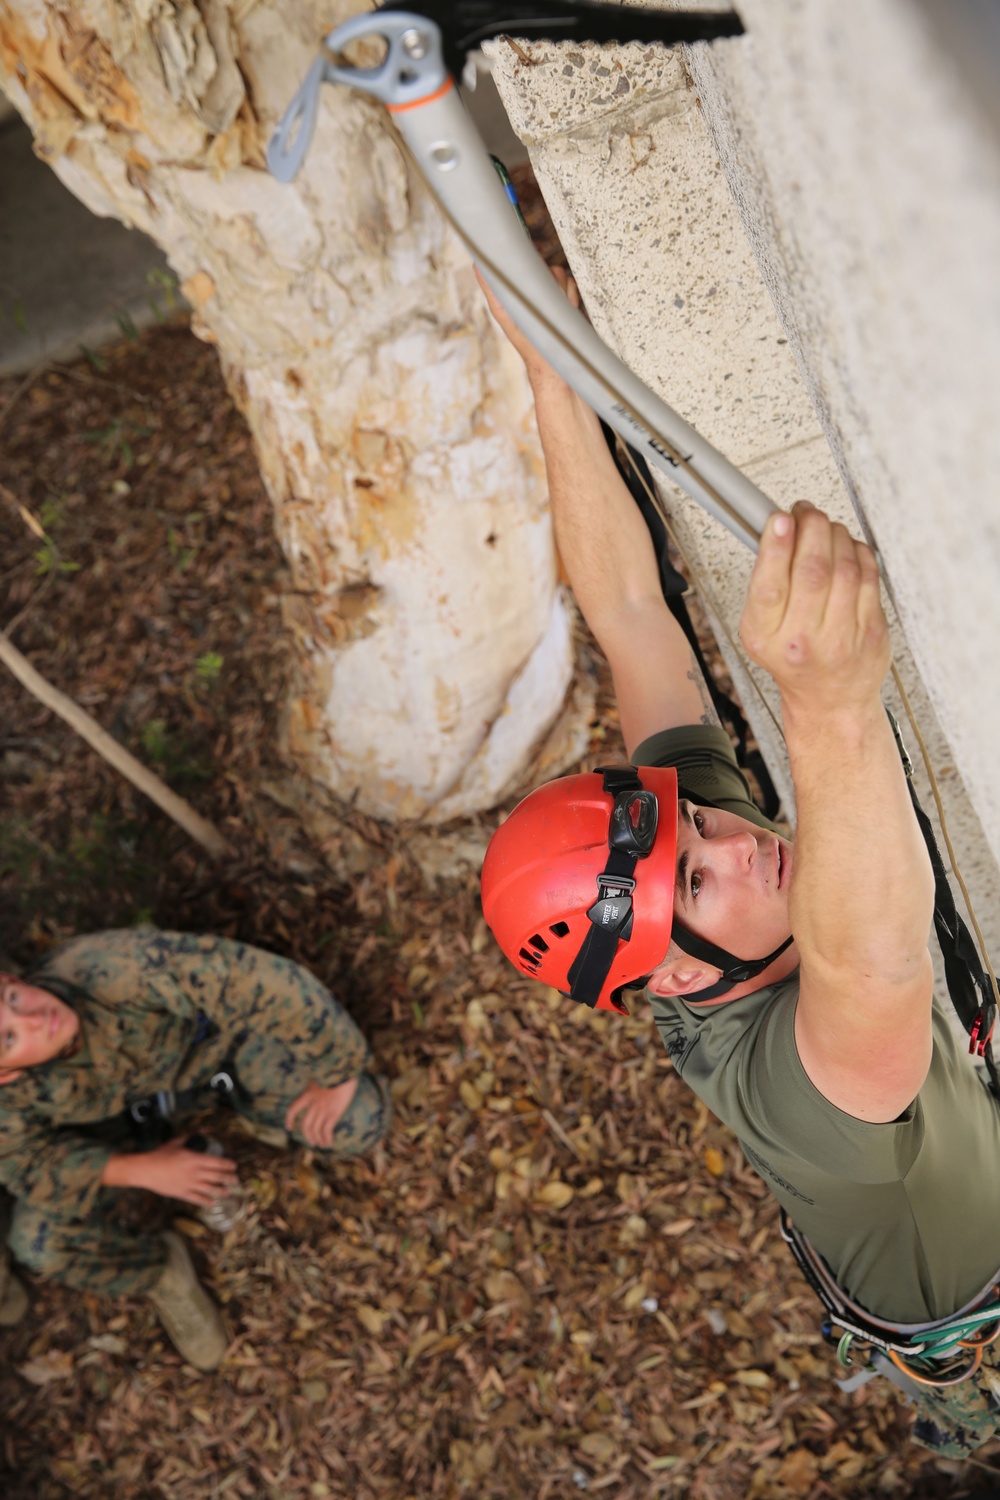 11th MEU Marines reach new heights at assault climber course